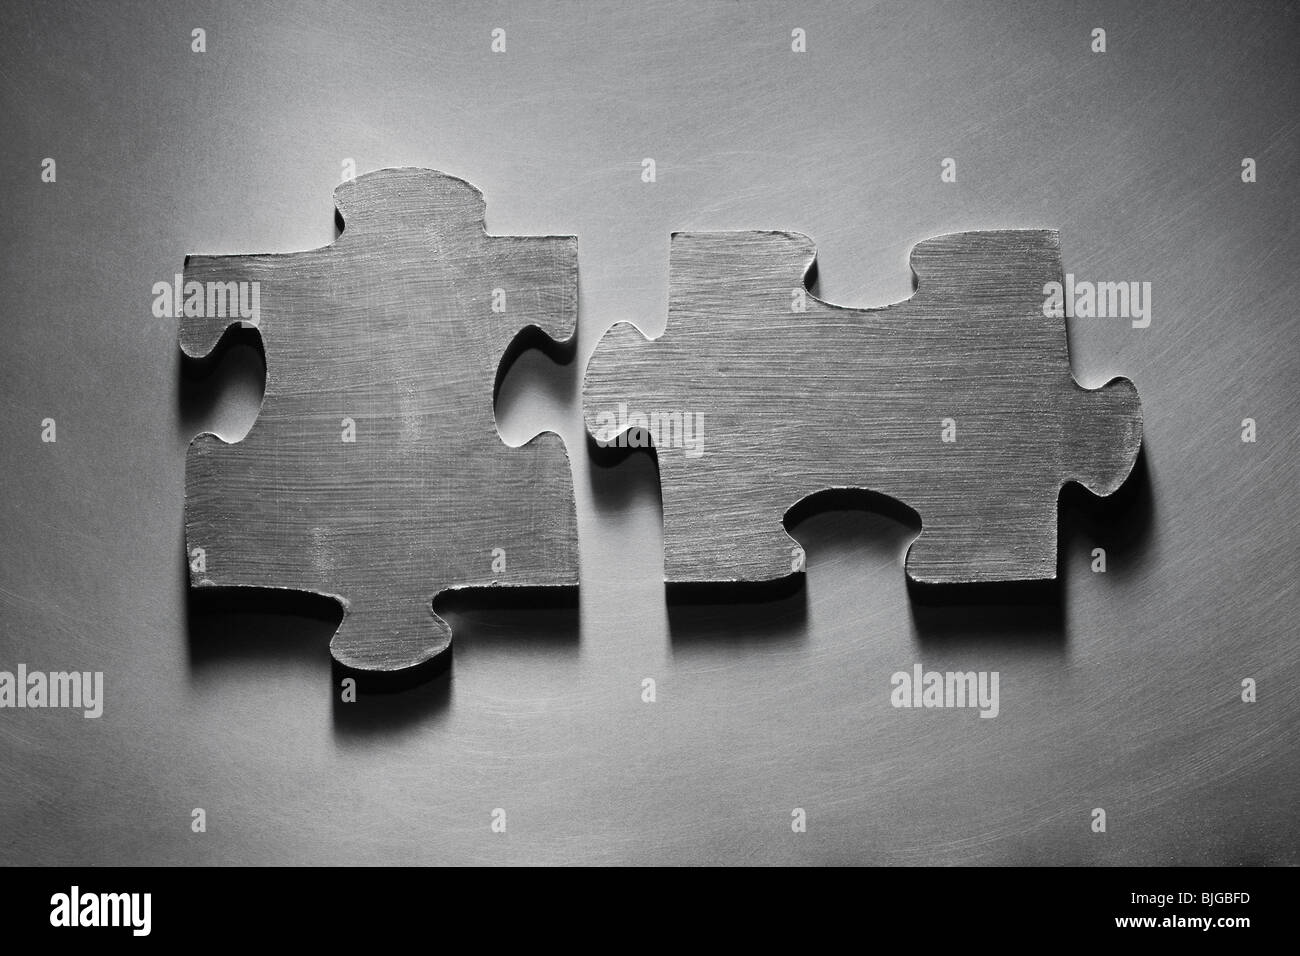 metallic puzzle pieces Stock Photo